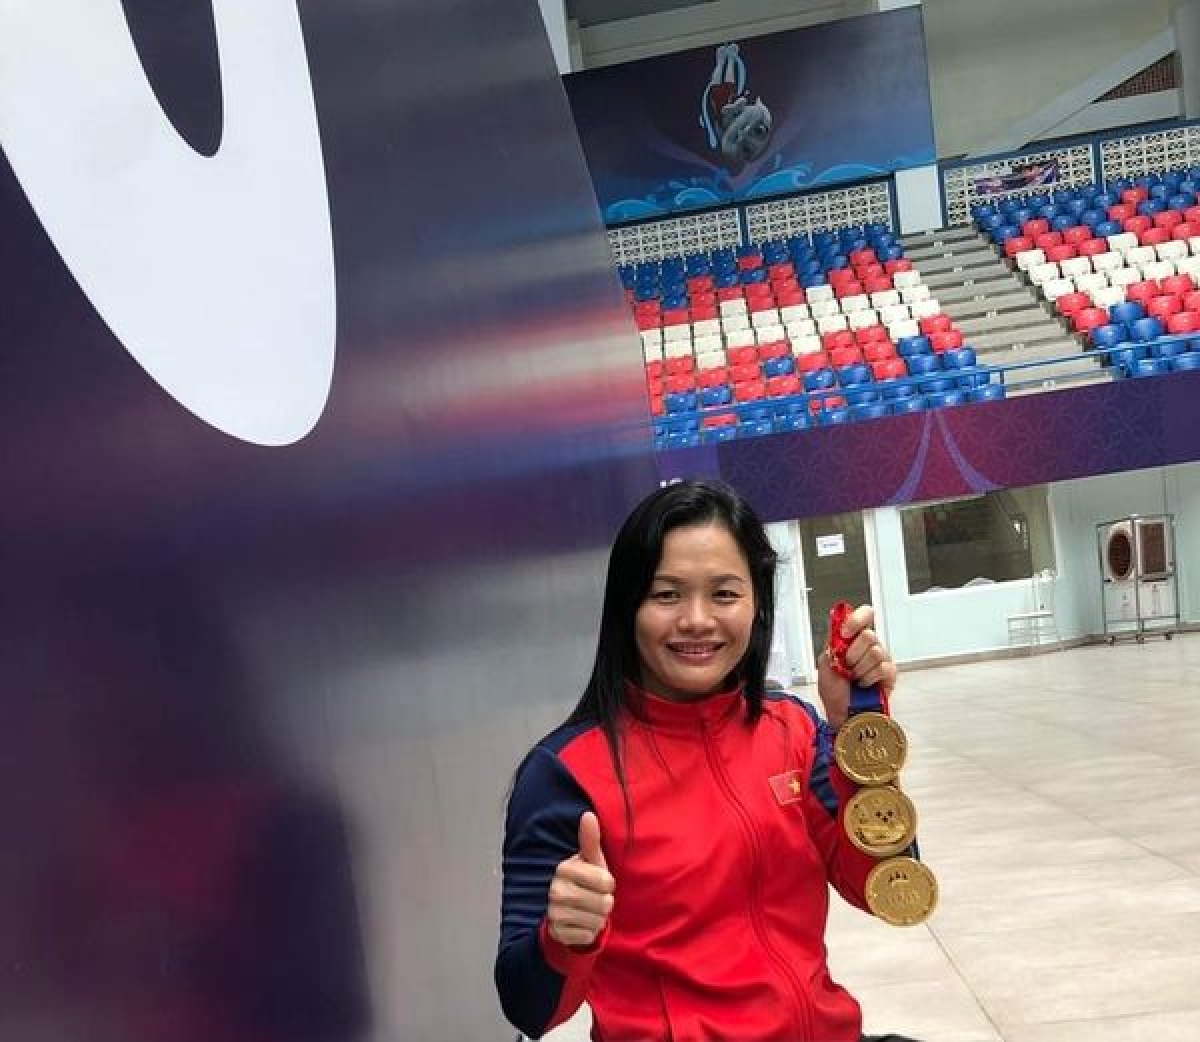 VĐV Trịnh Thị Bích Như giành được 7 huy chương trong 7 nội dung tranh tài và thiết lập 3 kỷ lục mới của ASEAN Para Games.